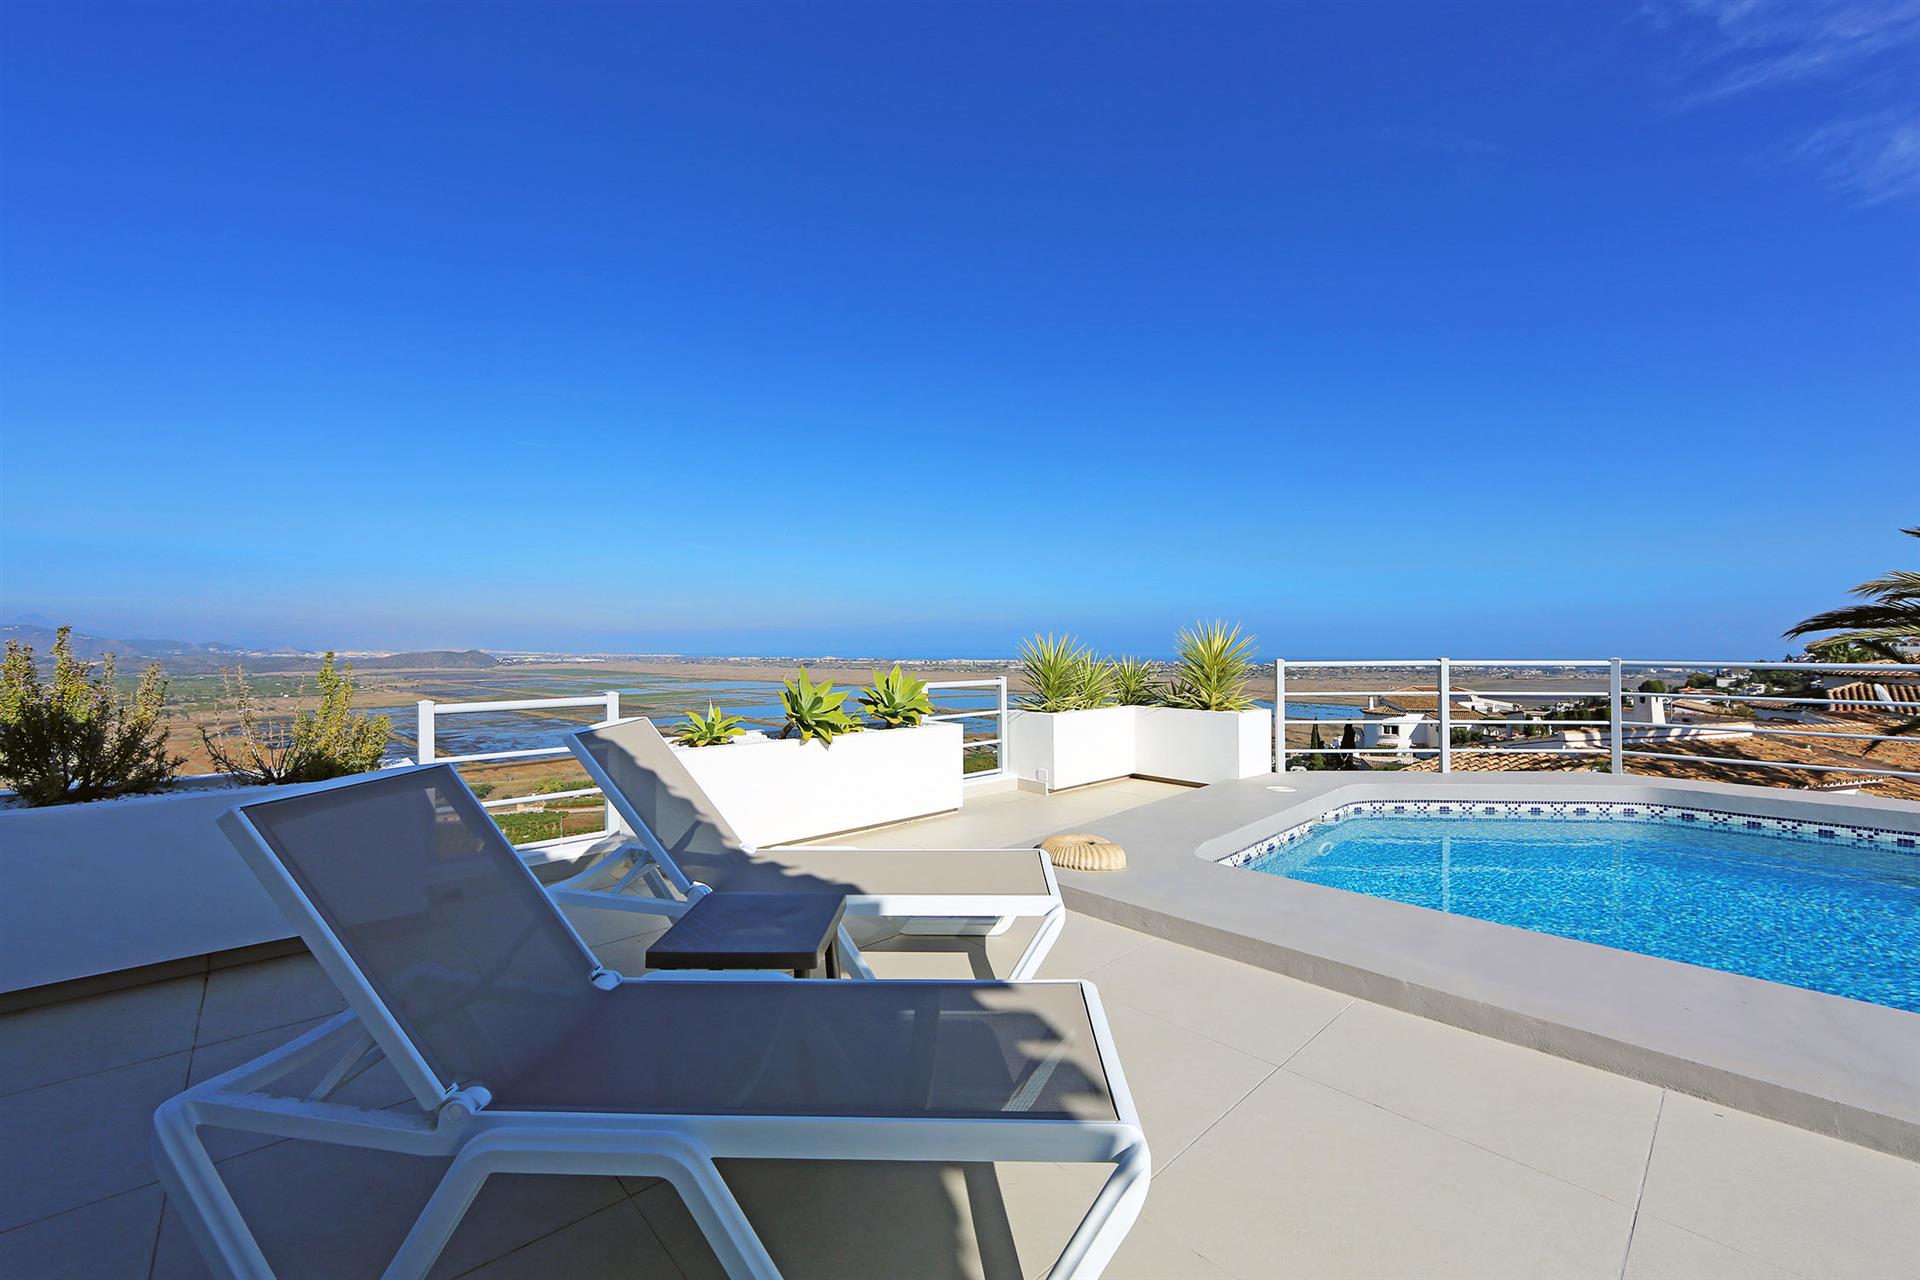 Uitzonderlijke luxe villa met panoramisch uitzicht op zee